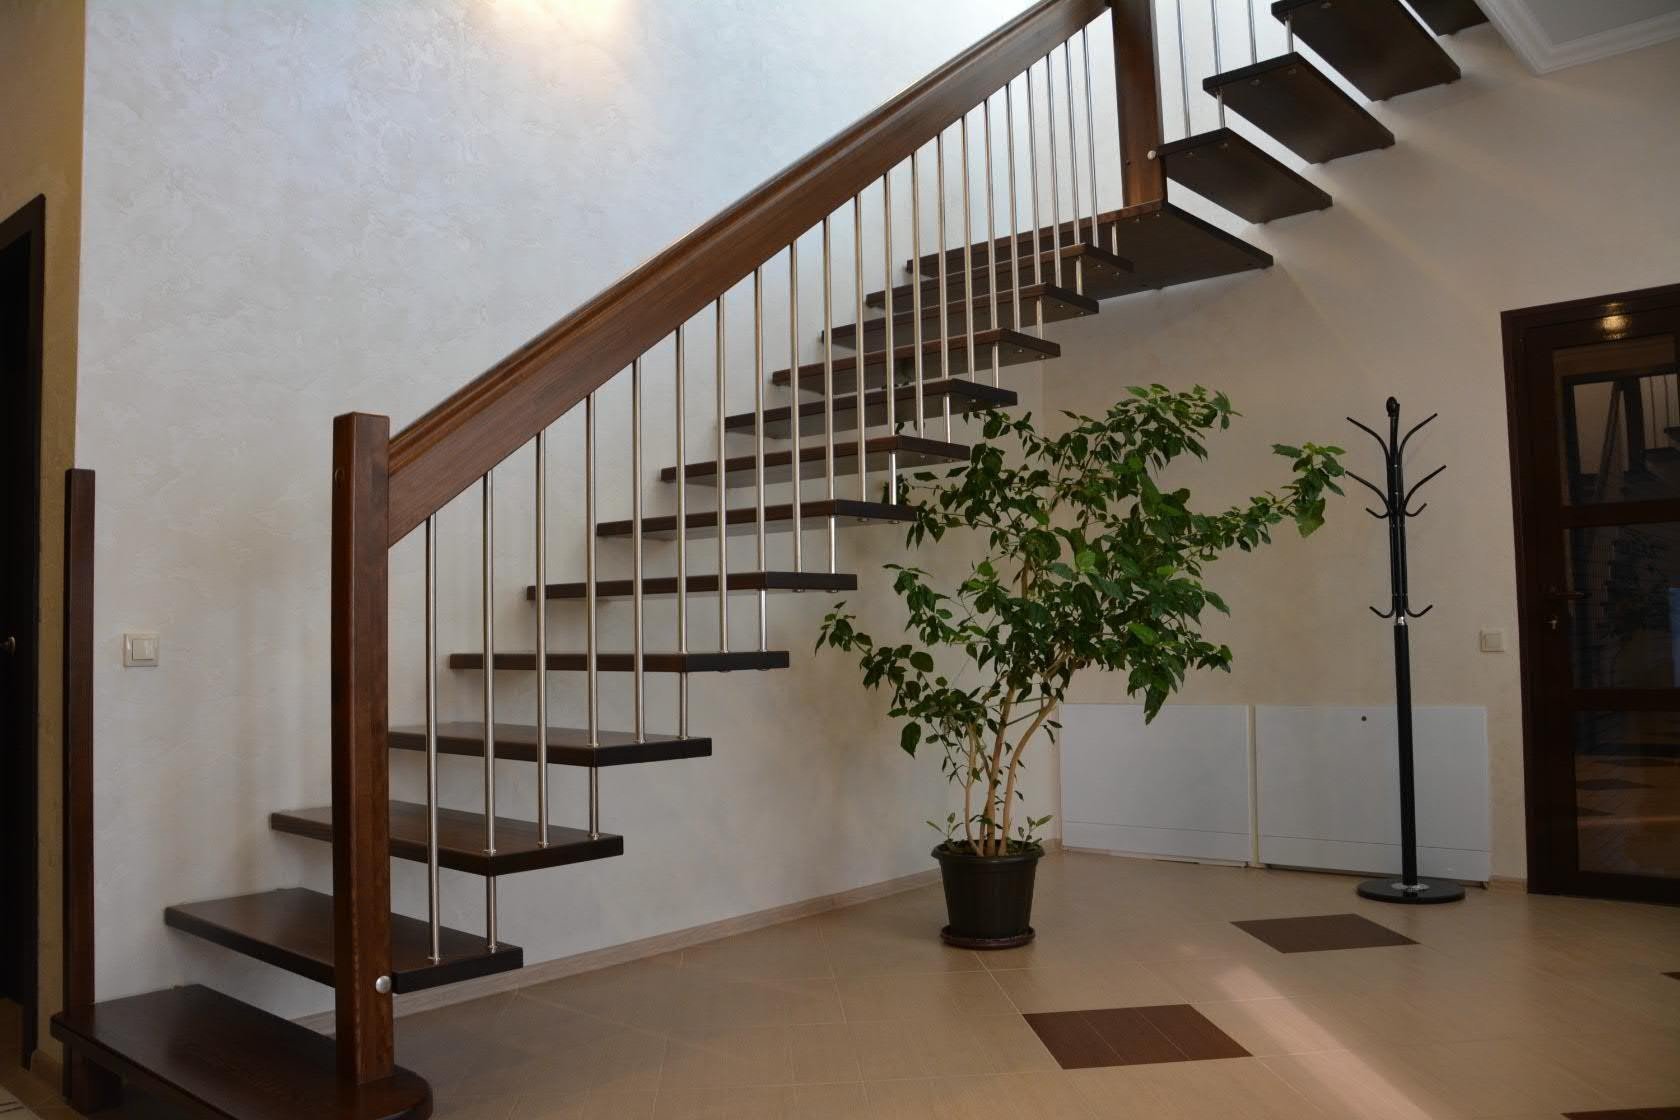 Варианты лестниц на второй. Маршевая лестница на больцах. Двухпролетная лестница в доме на второй этаж. Лестница на больцах на второй этаж в частном доме. Лестница на больцах конструкция.